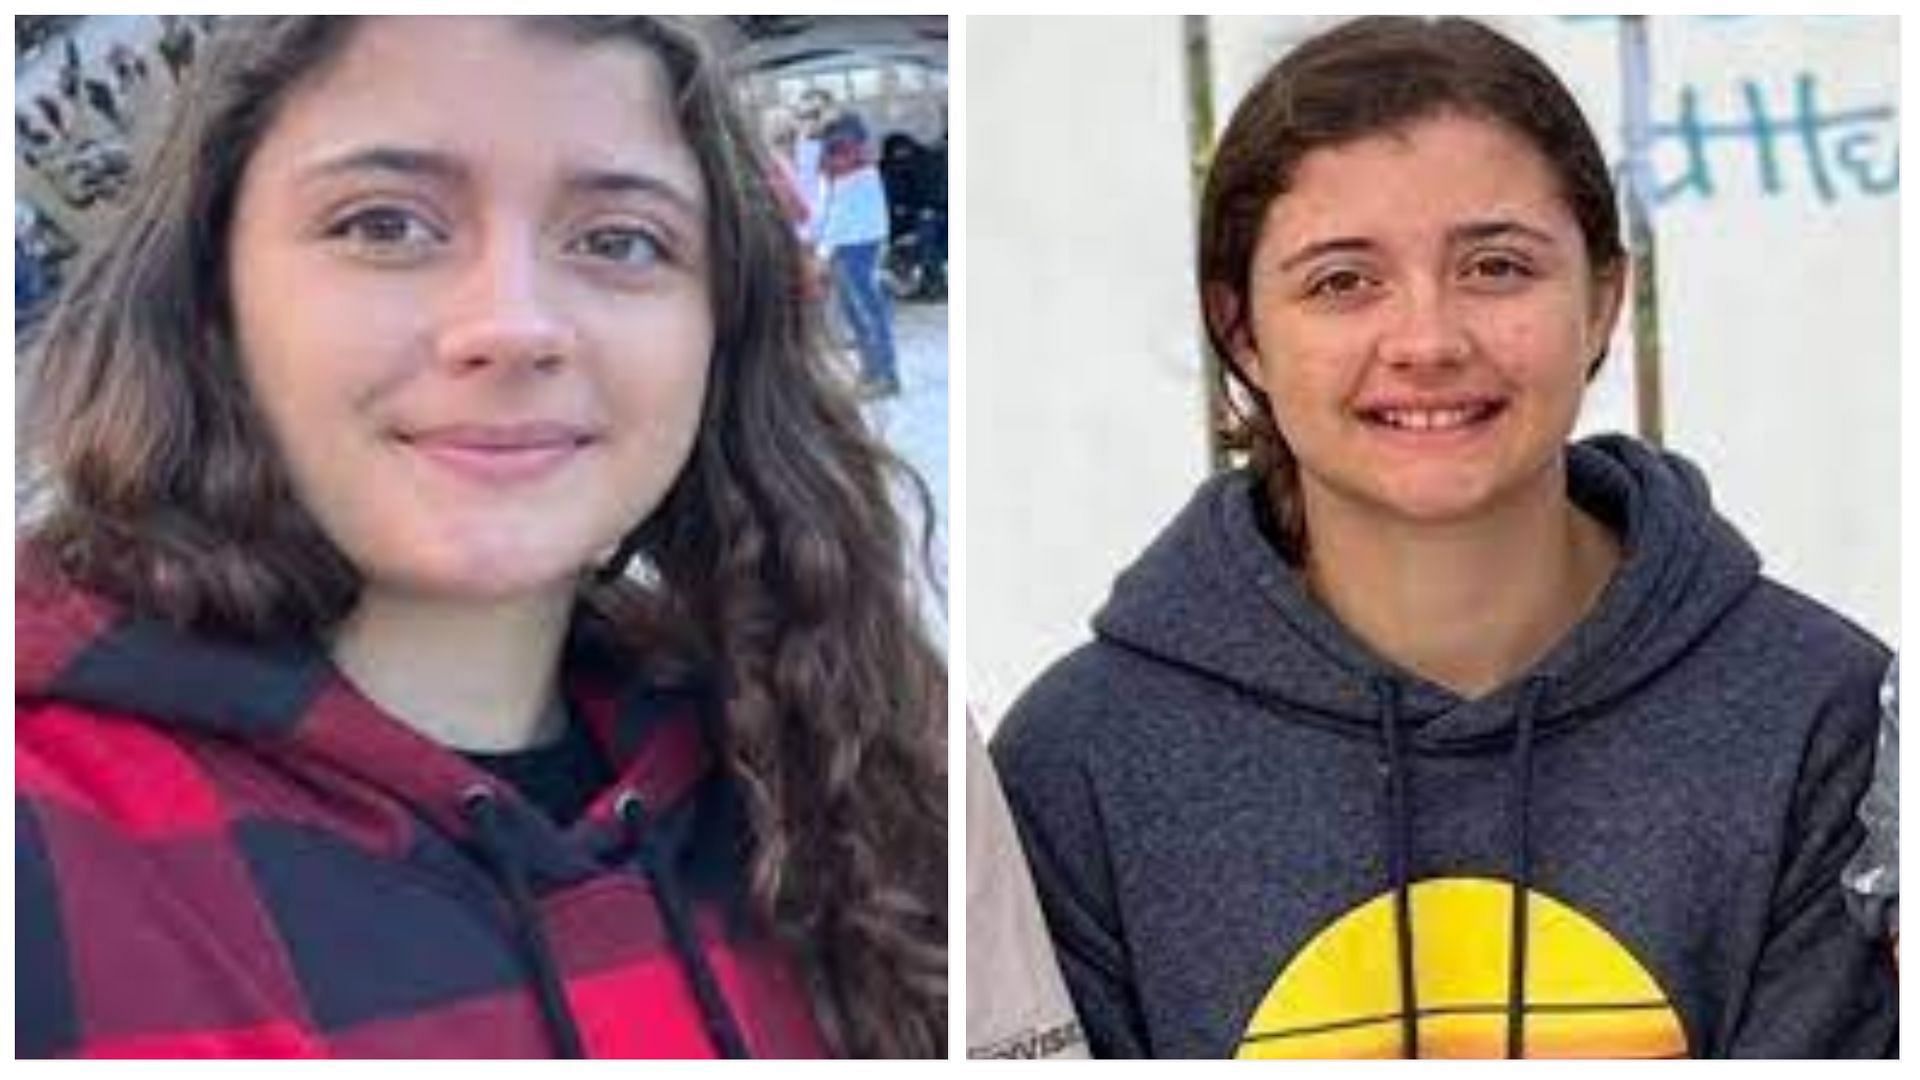 Georgia teen Kaylee Jones has been missing for 2 weeks (Images via family)